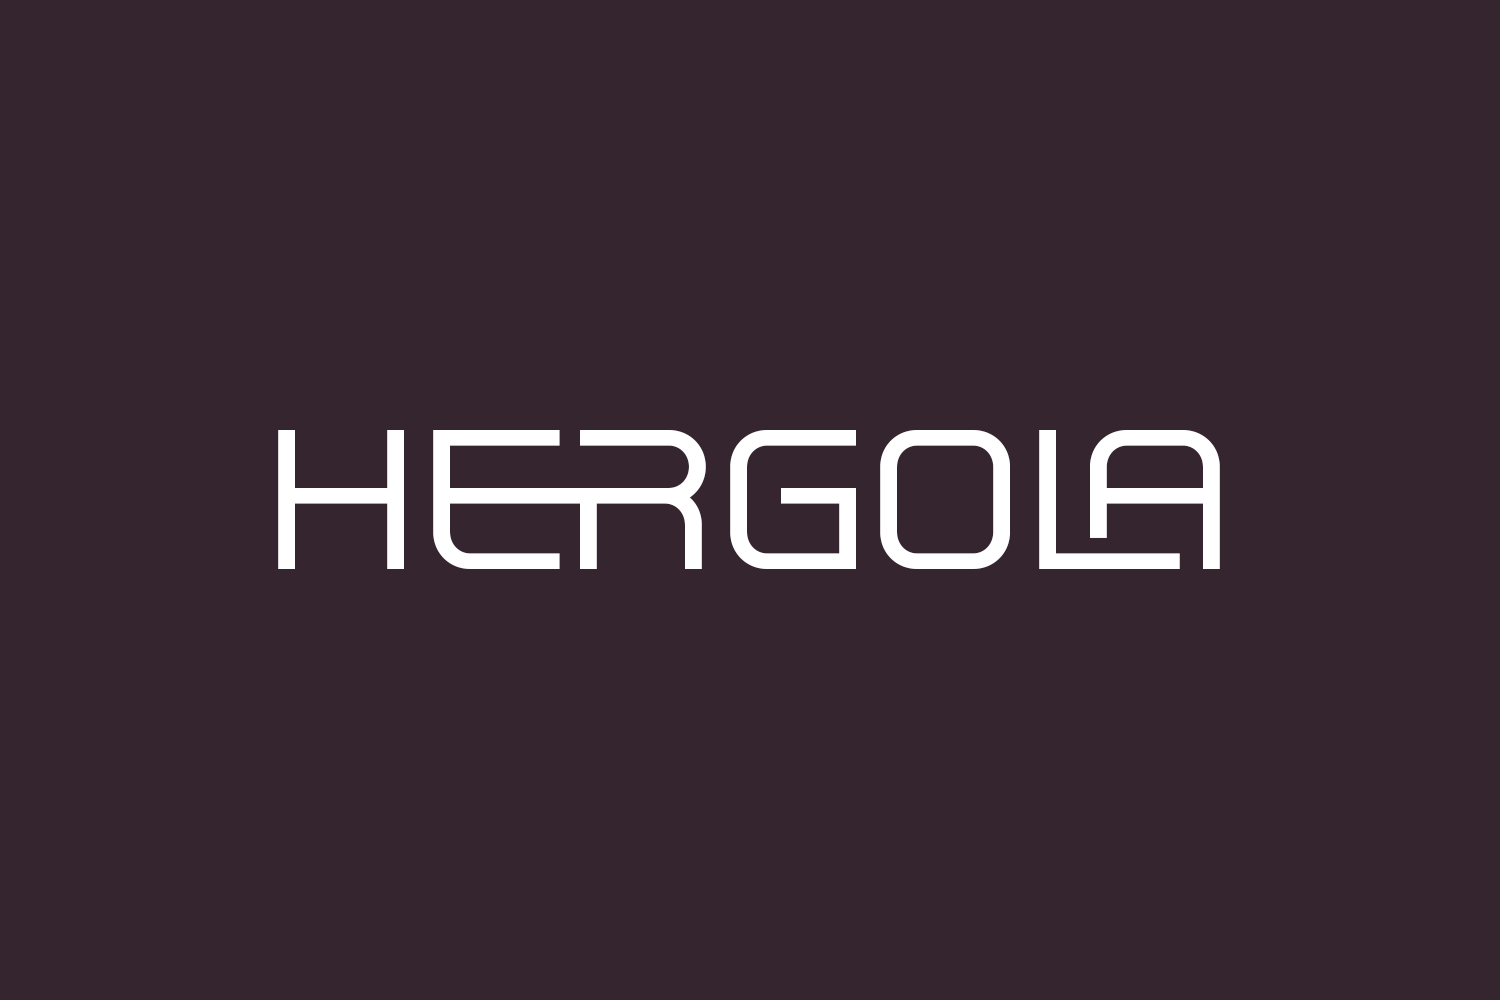 Hergola Free Font